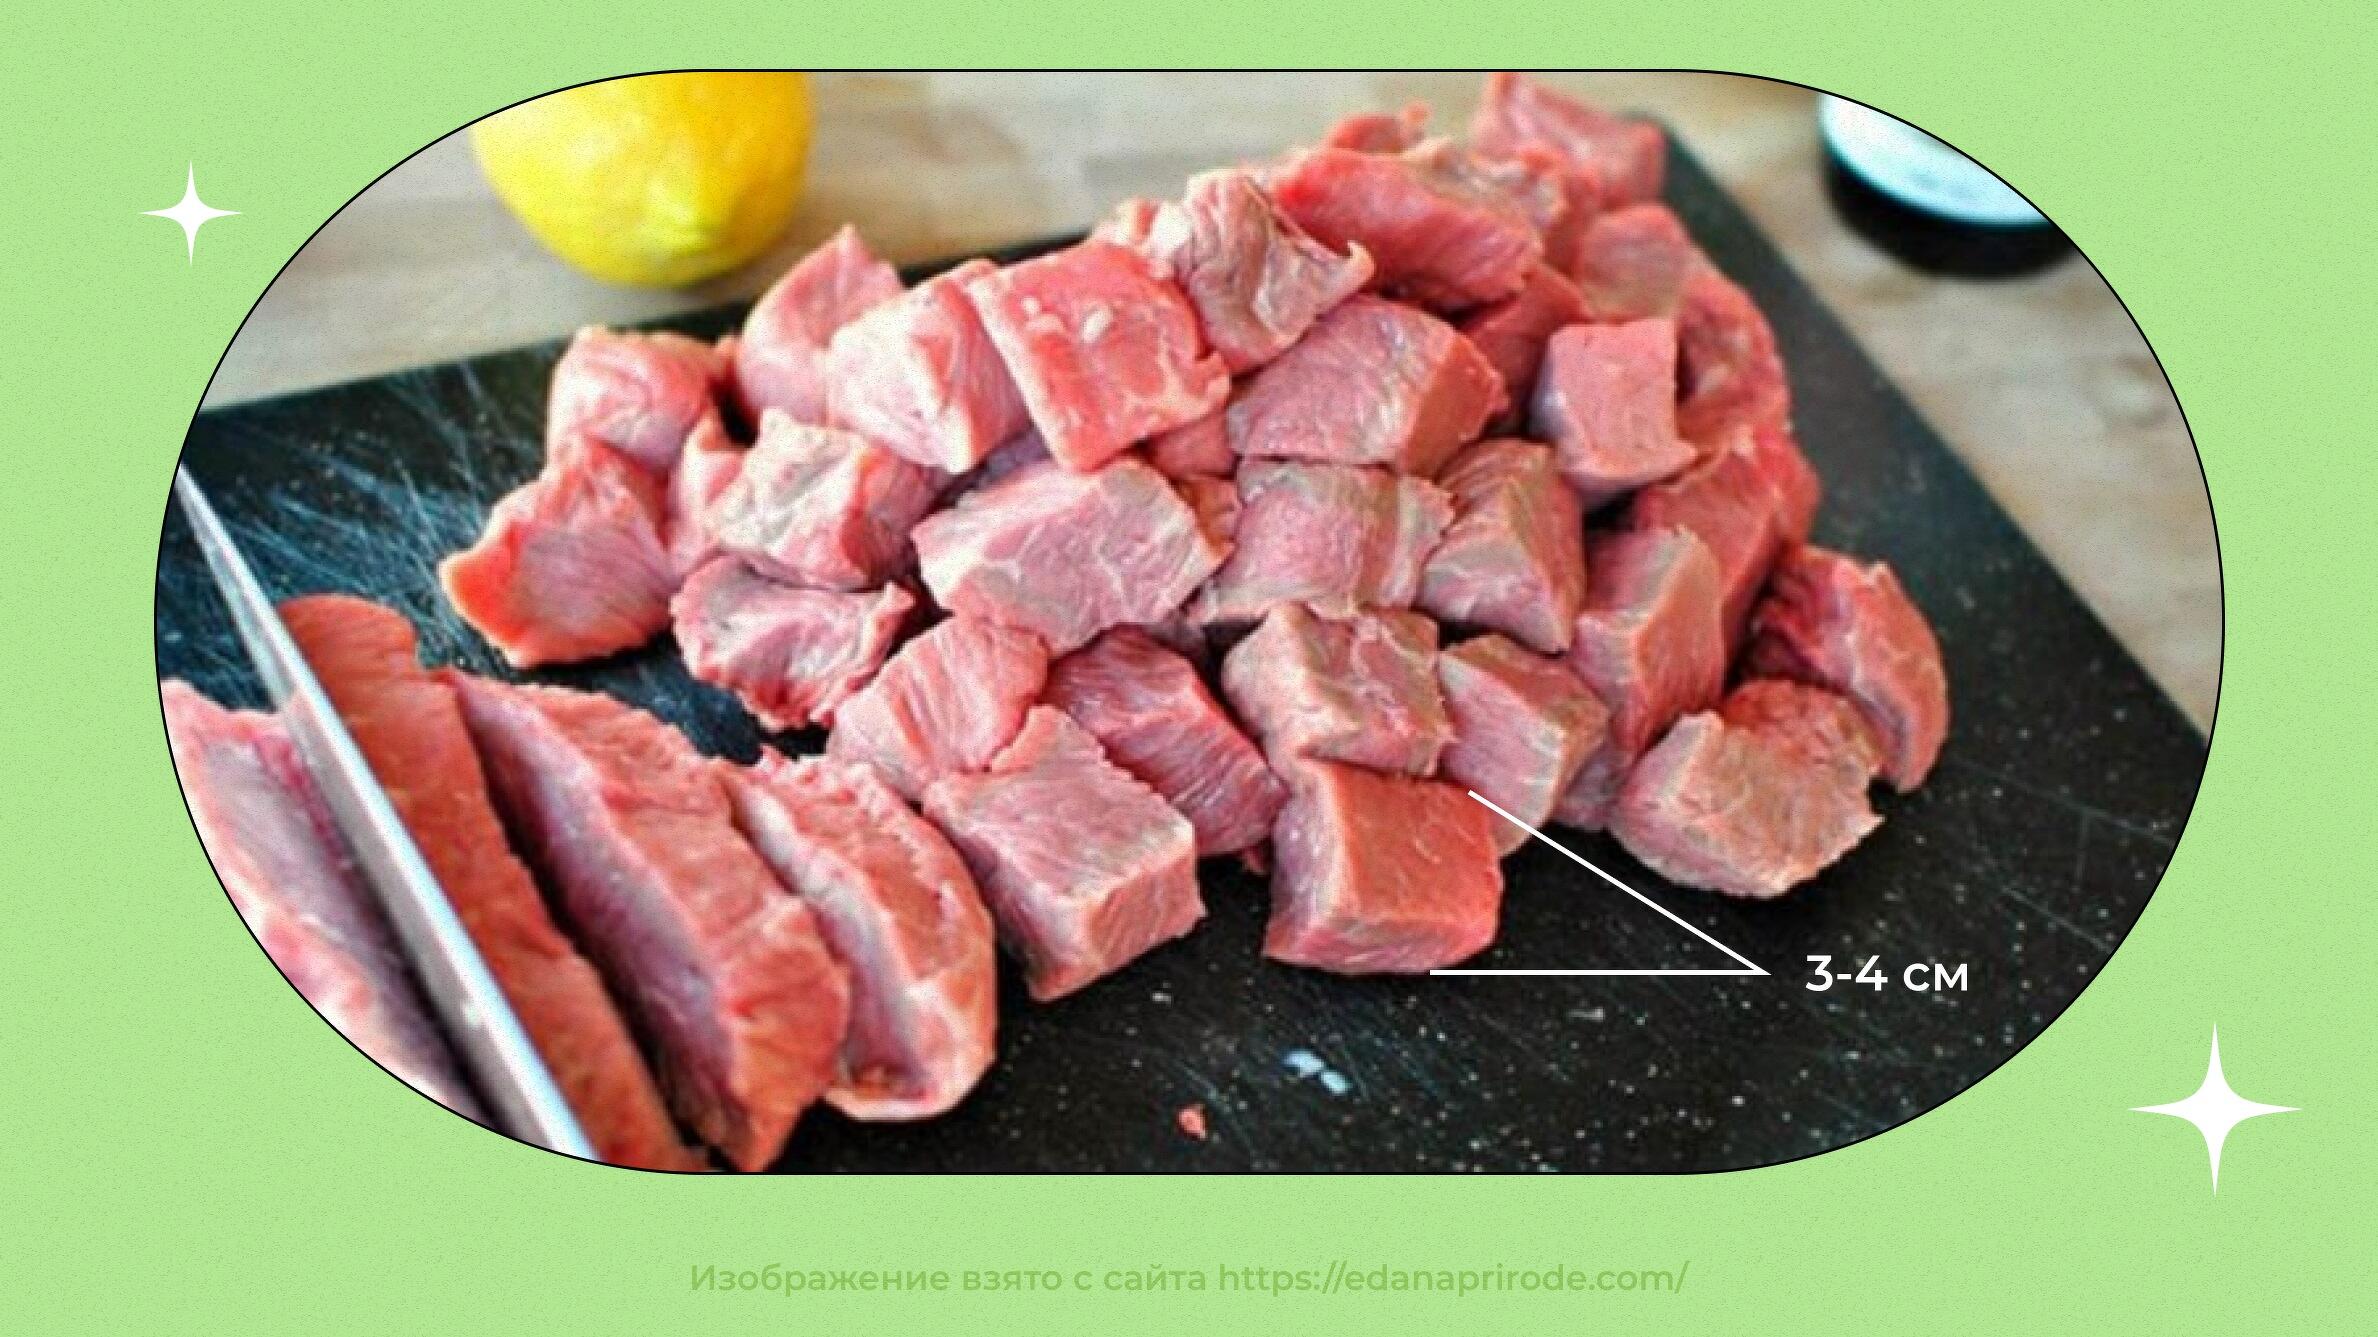 Шашлык из мяса бобра - пошаговый рецепт с фото